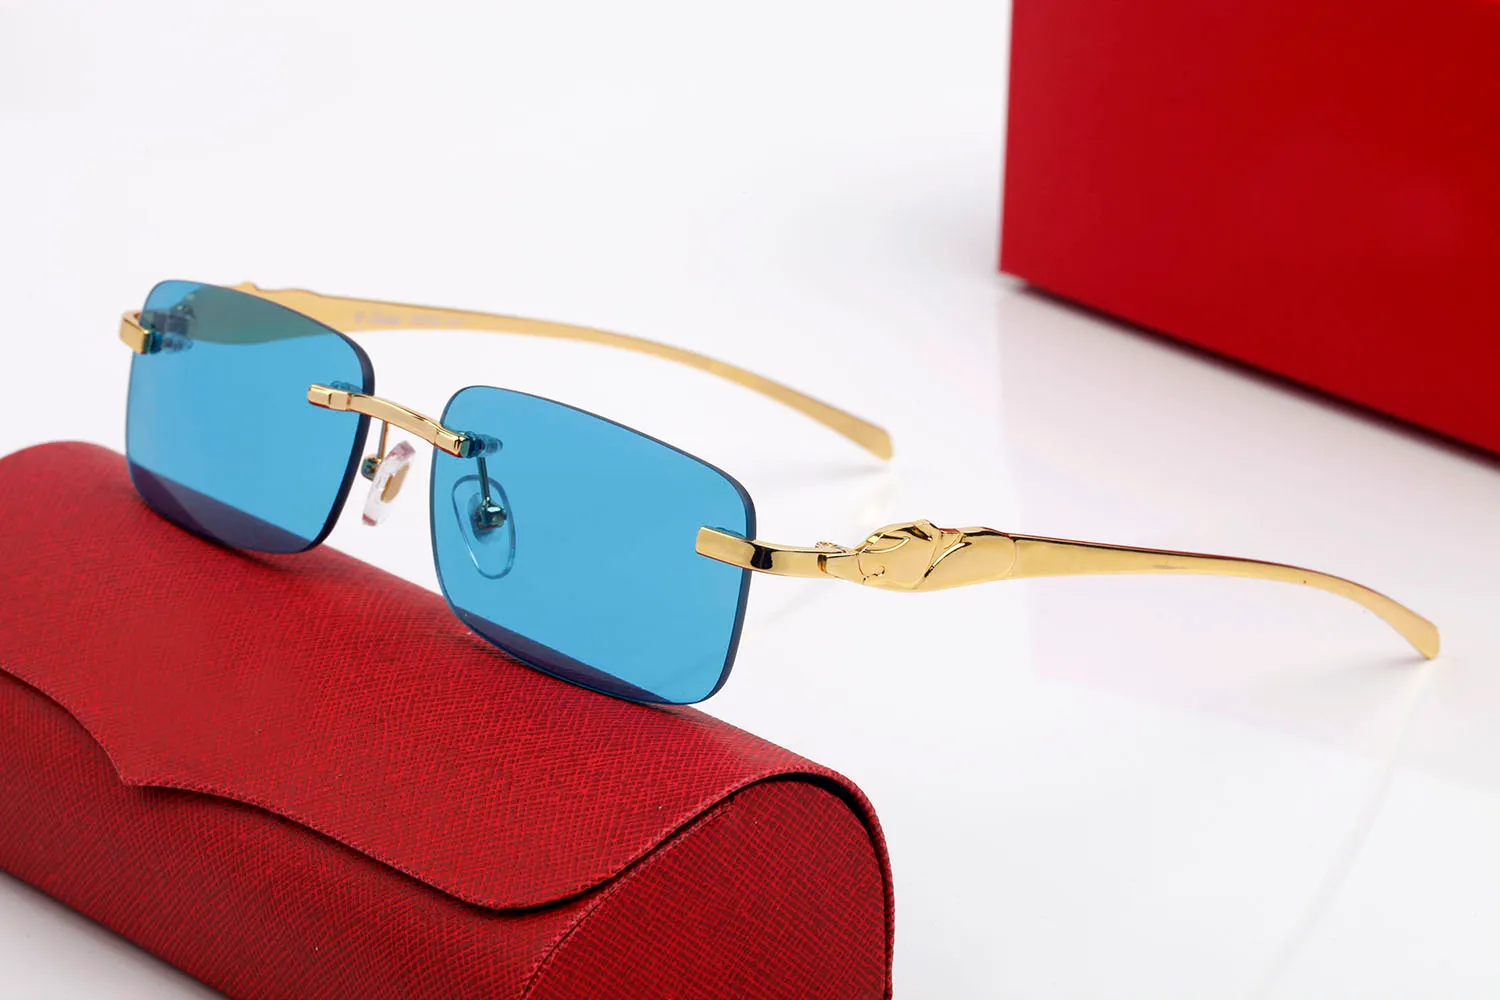 Rote Mode-Sonnenbrille für Herren, Unisex, Büffelhornbrille, Herren- und Damenbrille, randlose Sonnenbrille, silberfarben, goldfarben, Metallrahmen, Brillen lunettes3003